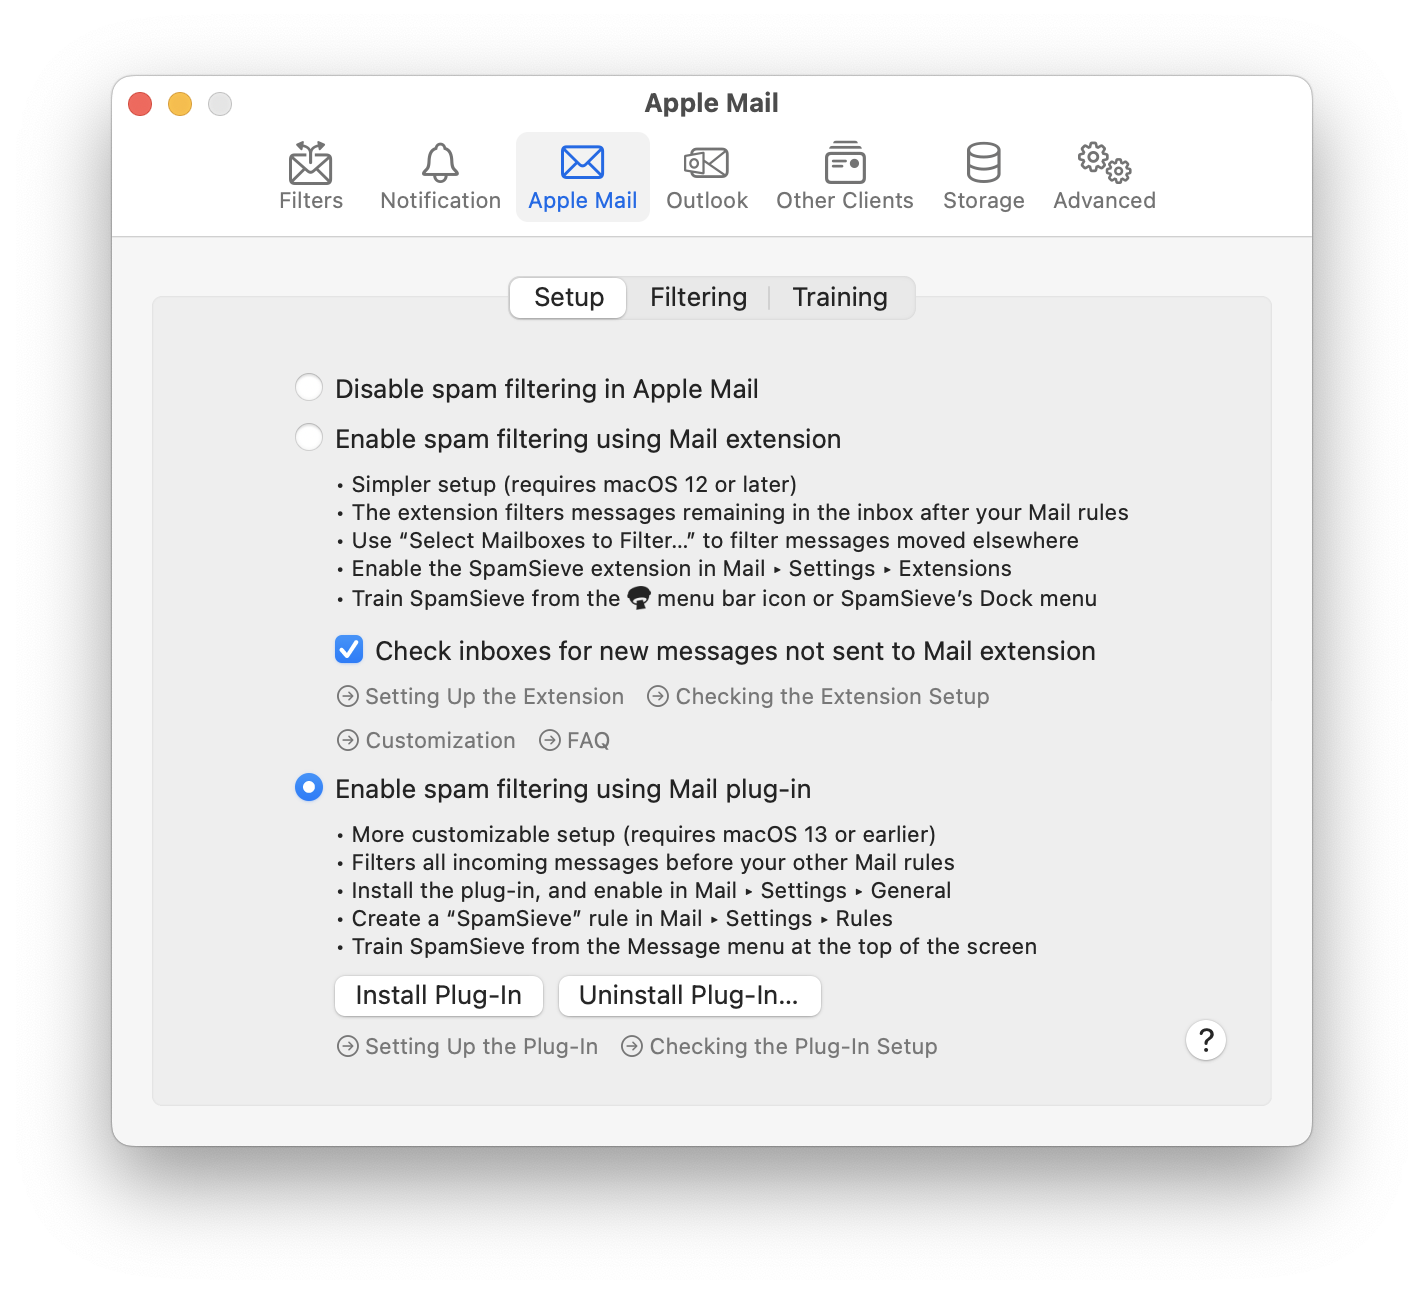 settings apple mail setup plug in